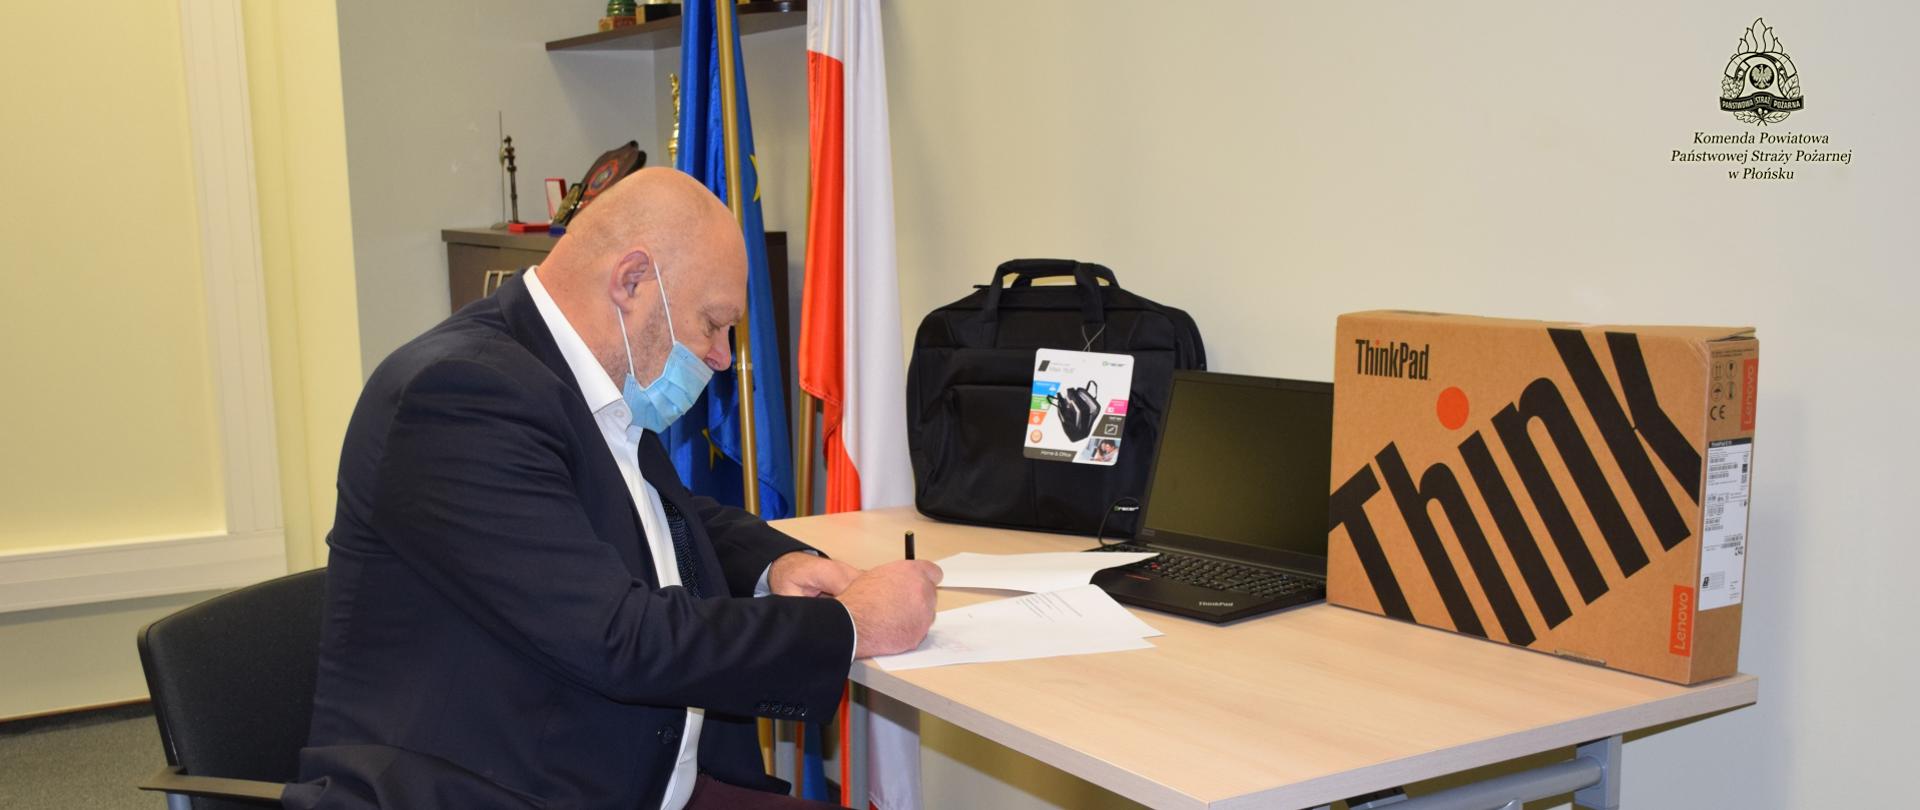 Mężczyzna podpisuje dokument, na stoliku stoi laptop, torba i pudełko, z tyłu półka z pucharami i flaga unijna. 